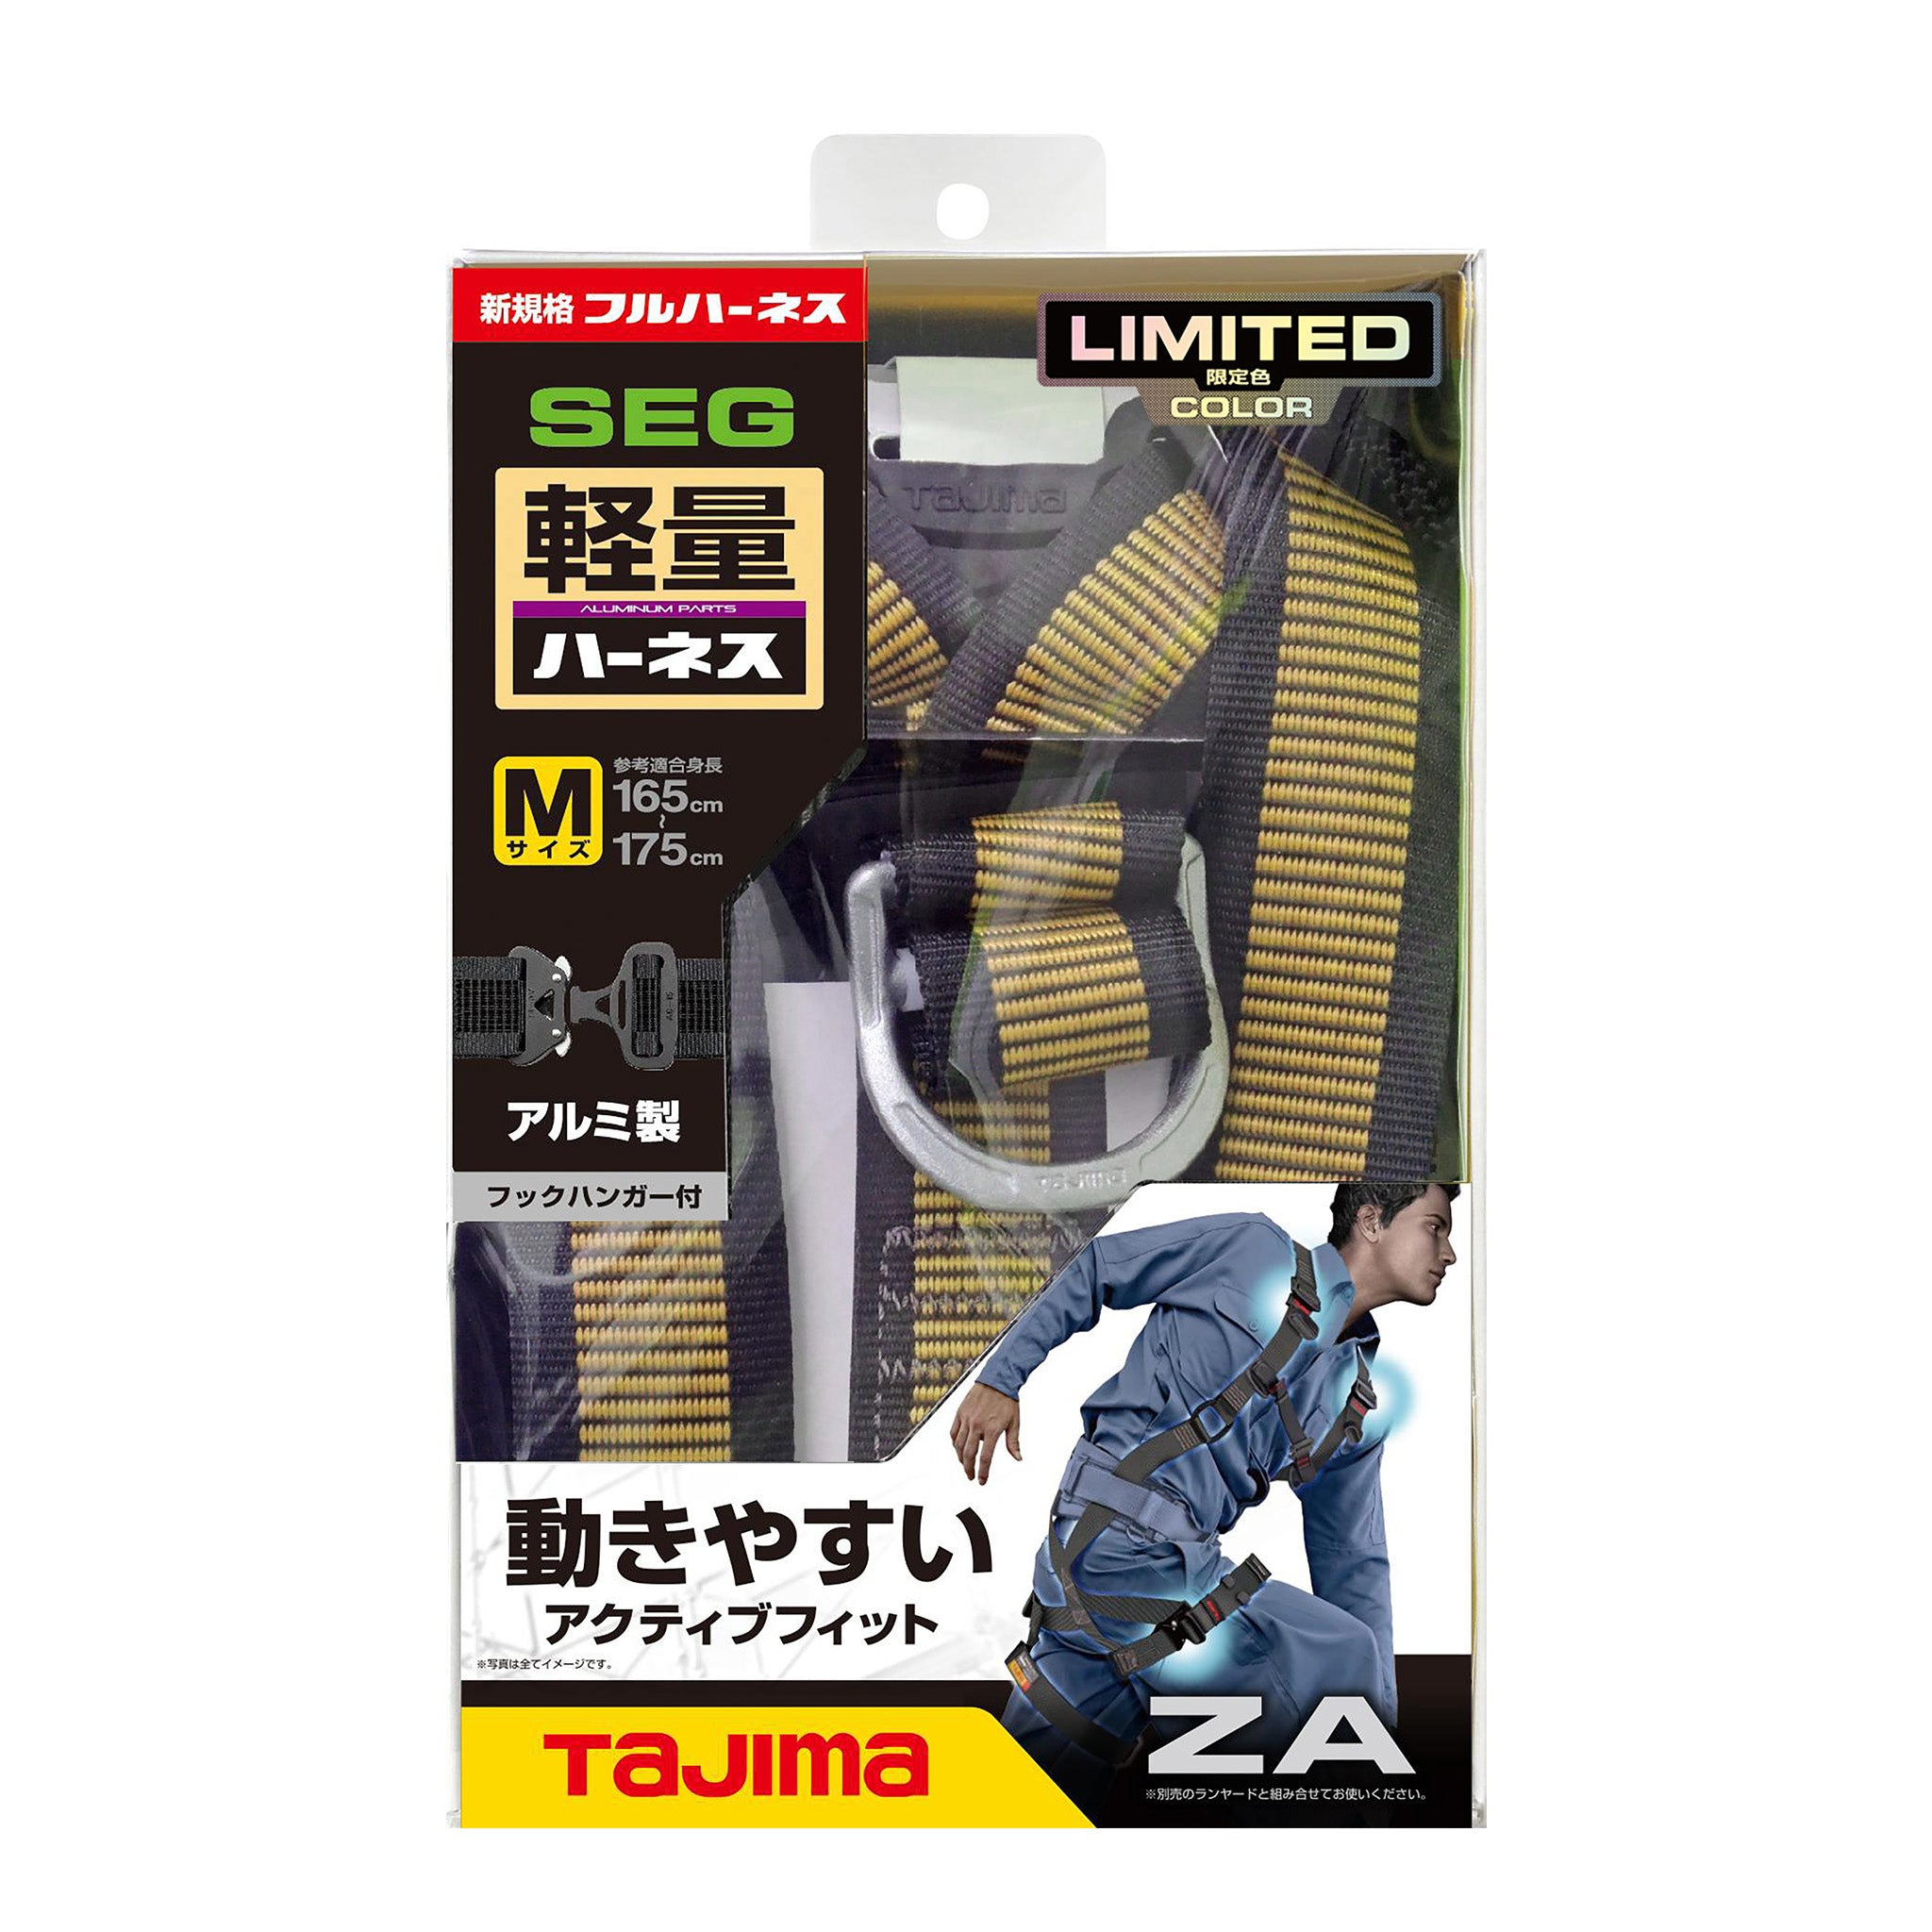 タジマ 新規格フルハーネス ZA 軽量アルミ・ワンタッチ腿バックルモデル 【限定色】